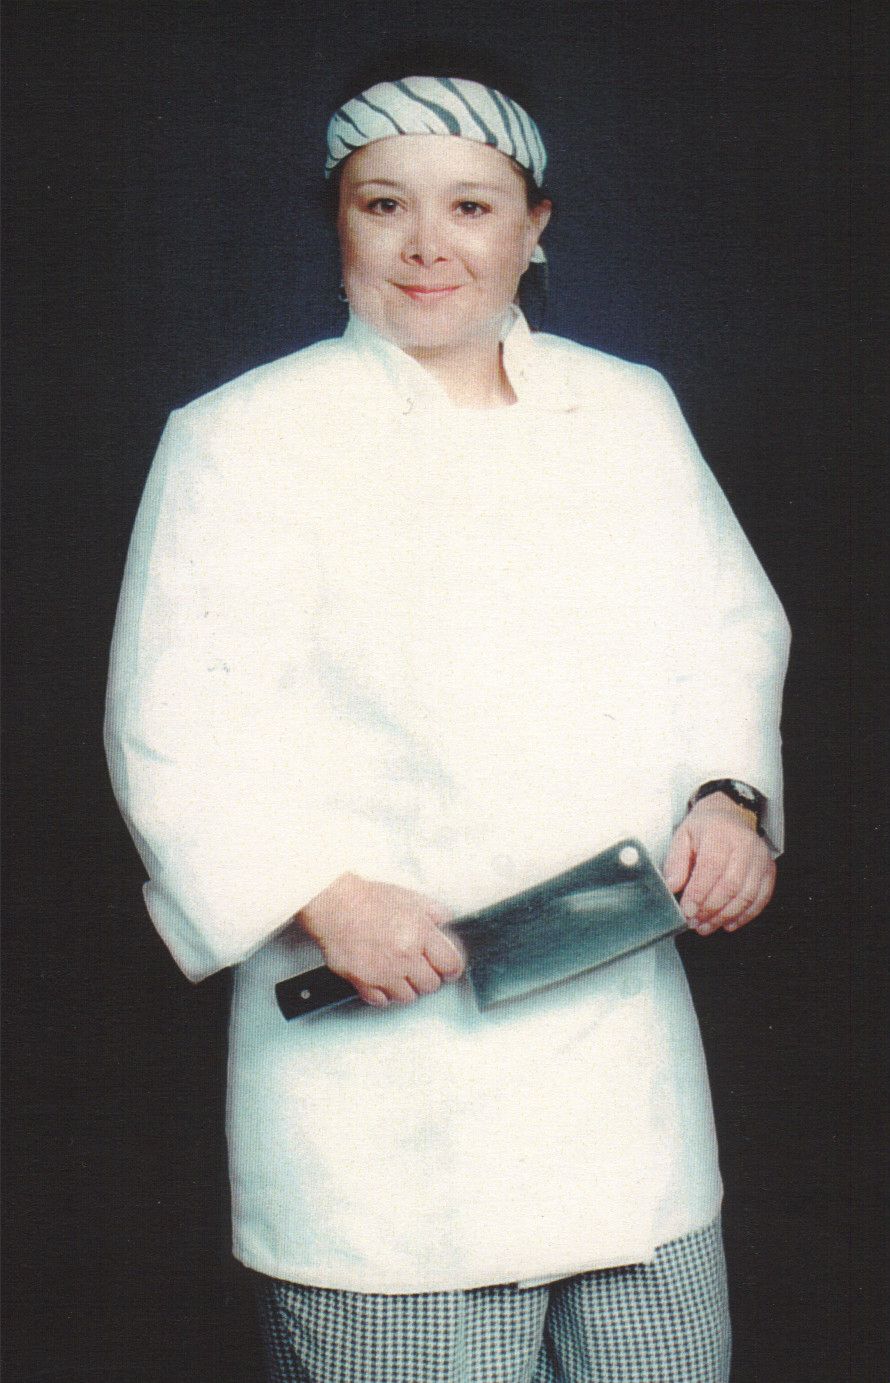 June Jordan in CHEF WHITES